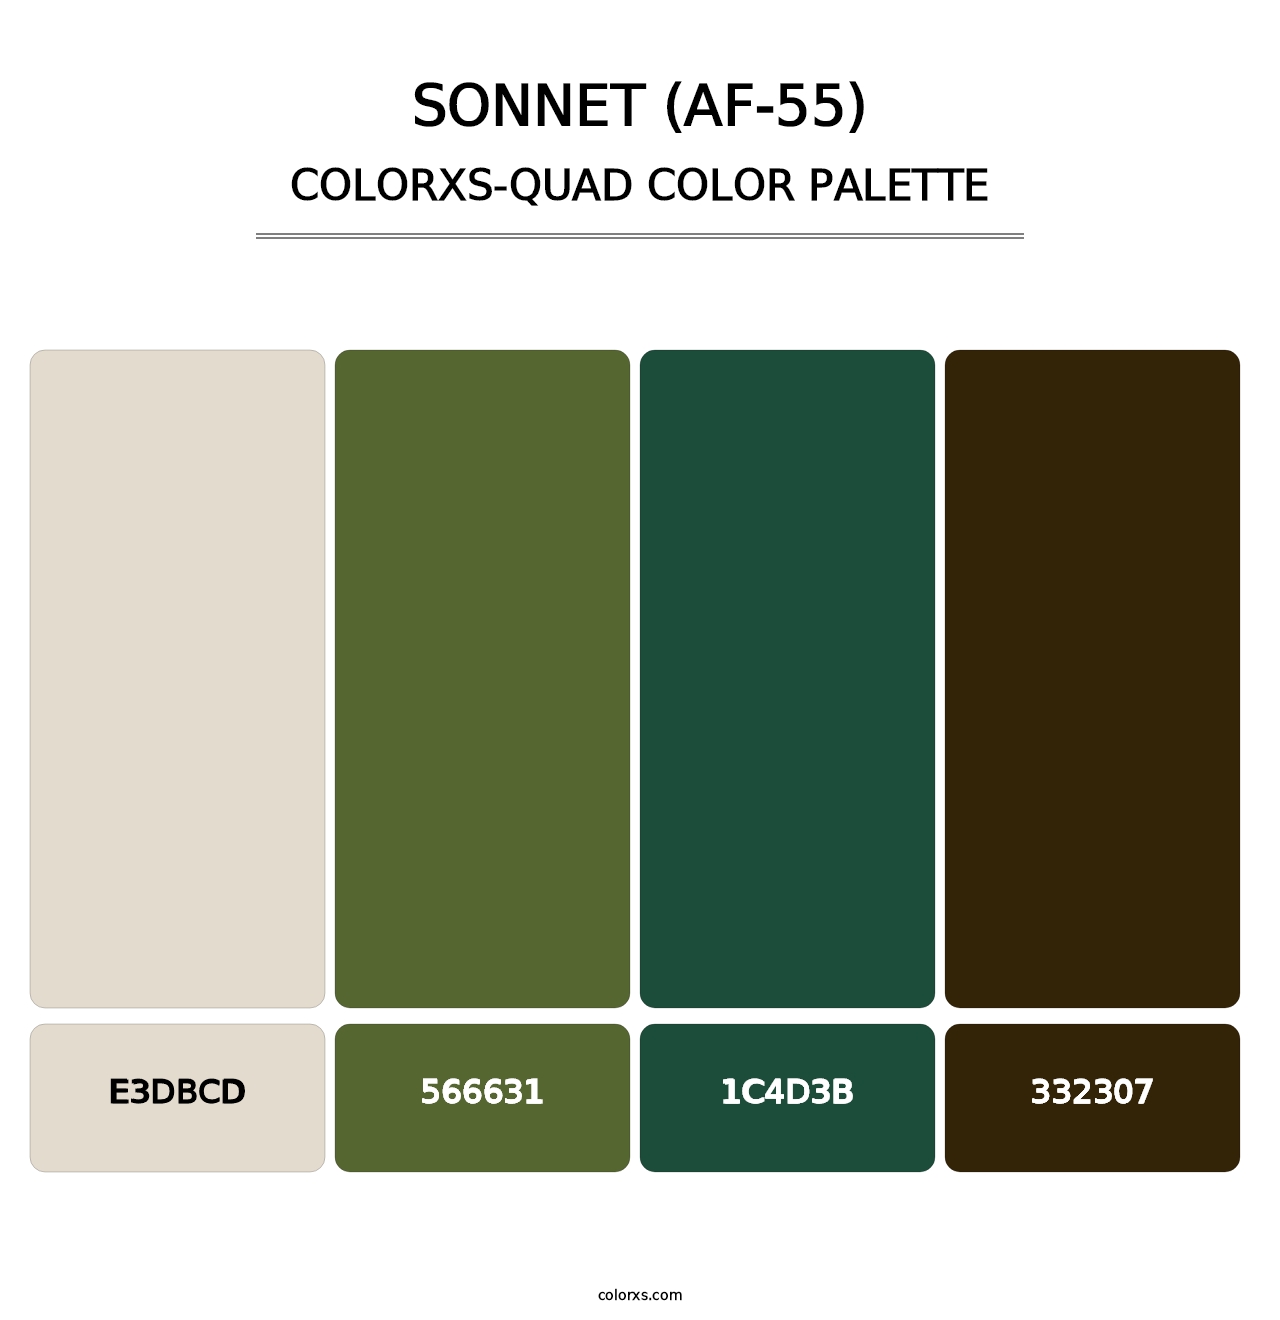 Sonnet (AF-55) - Colorxs Quad Palette